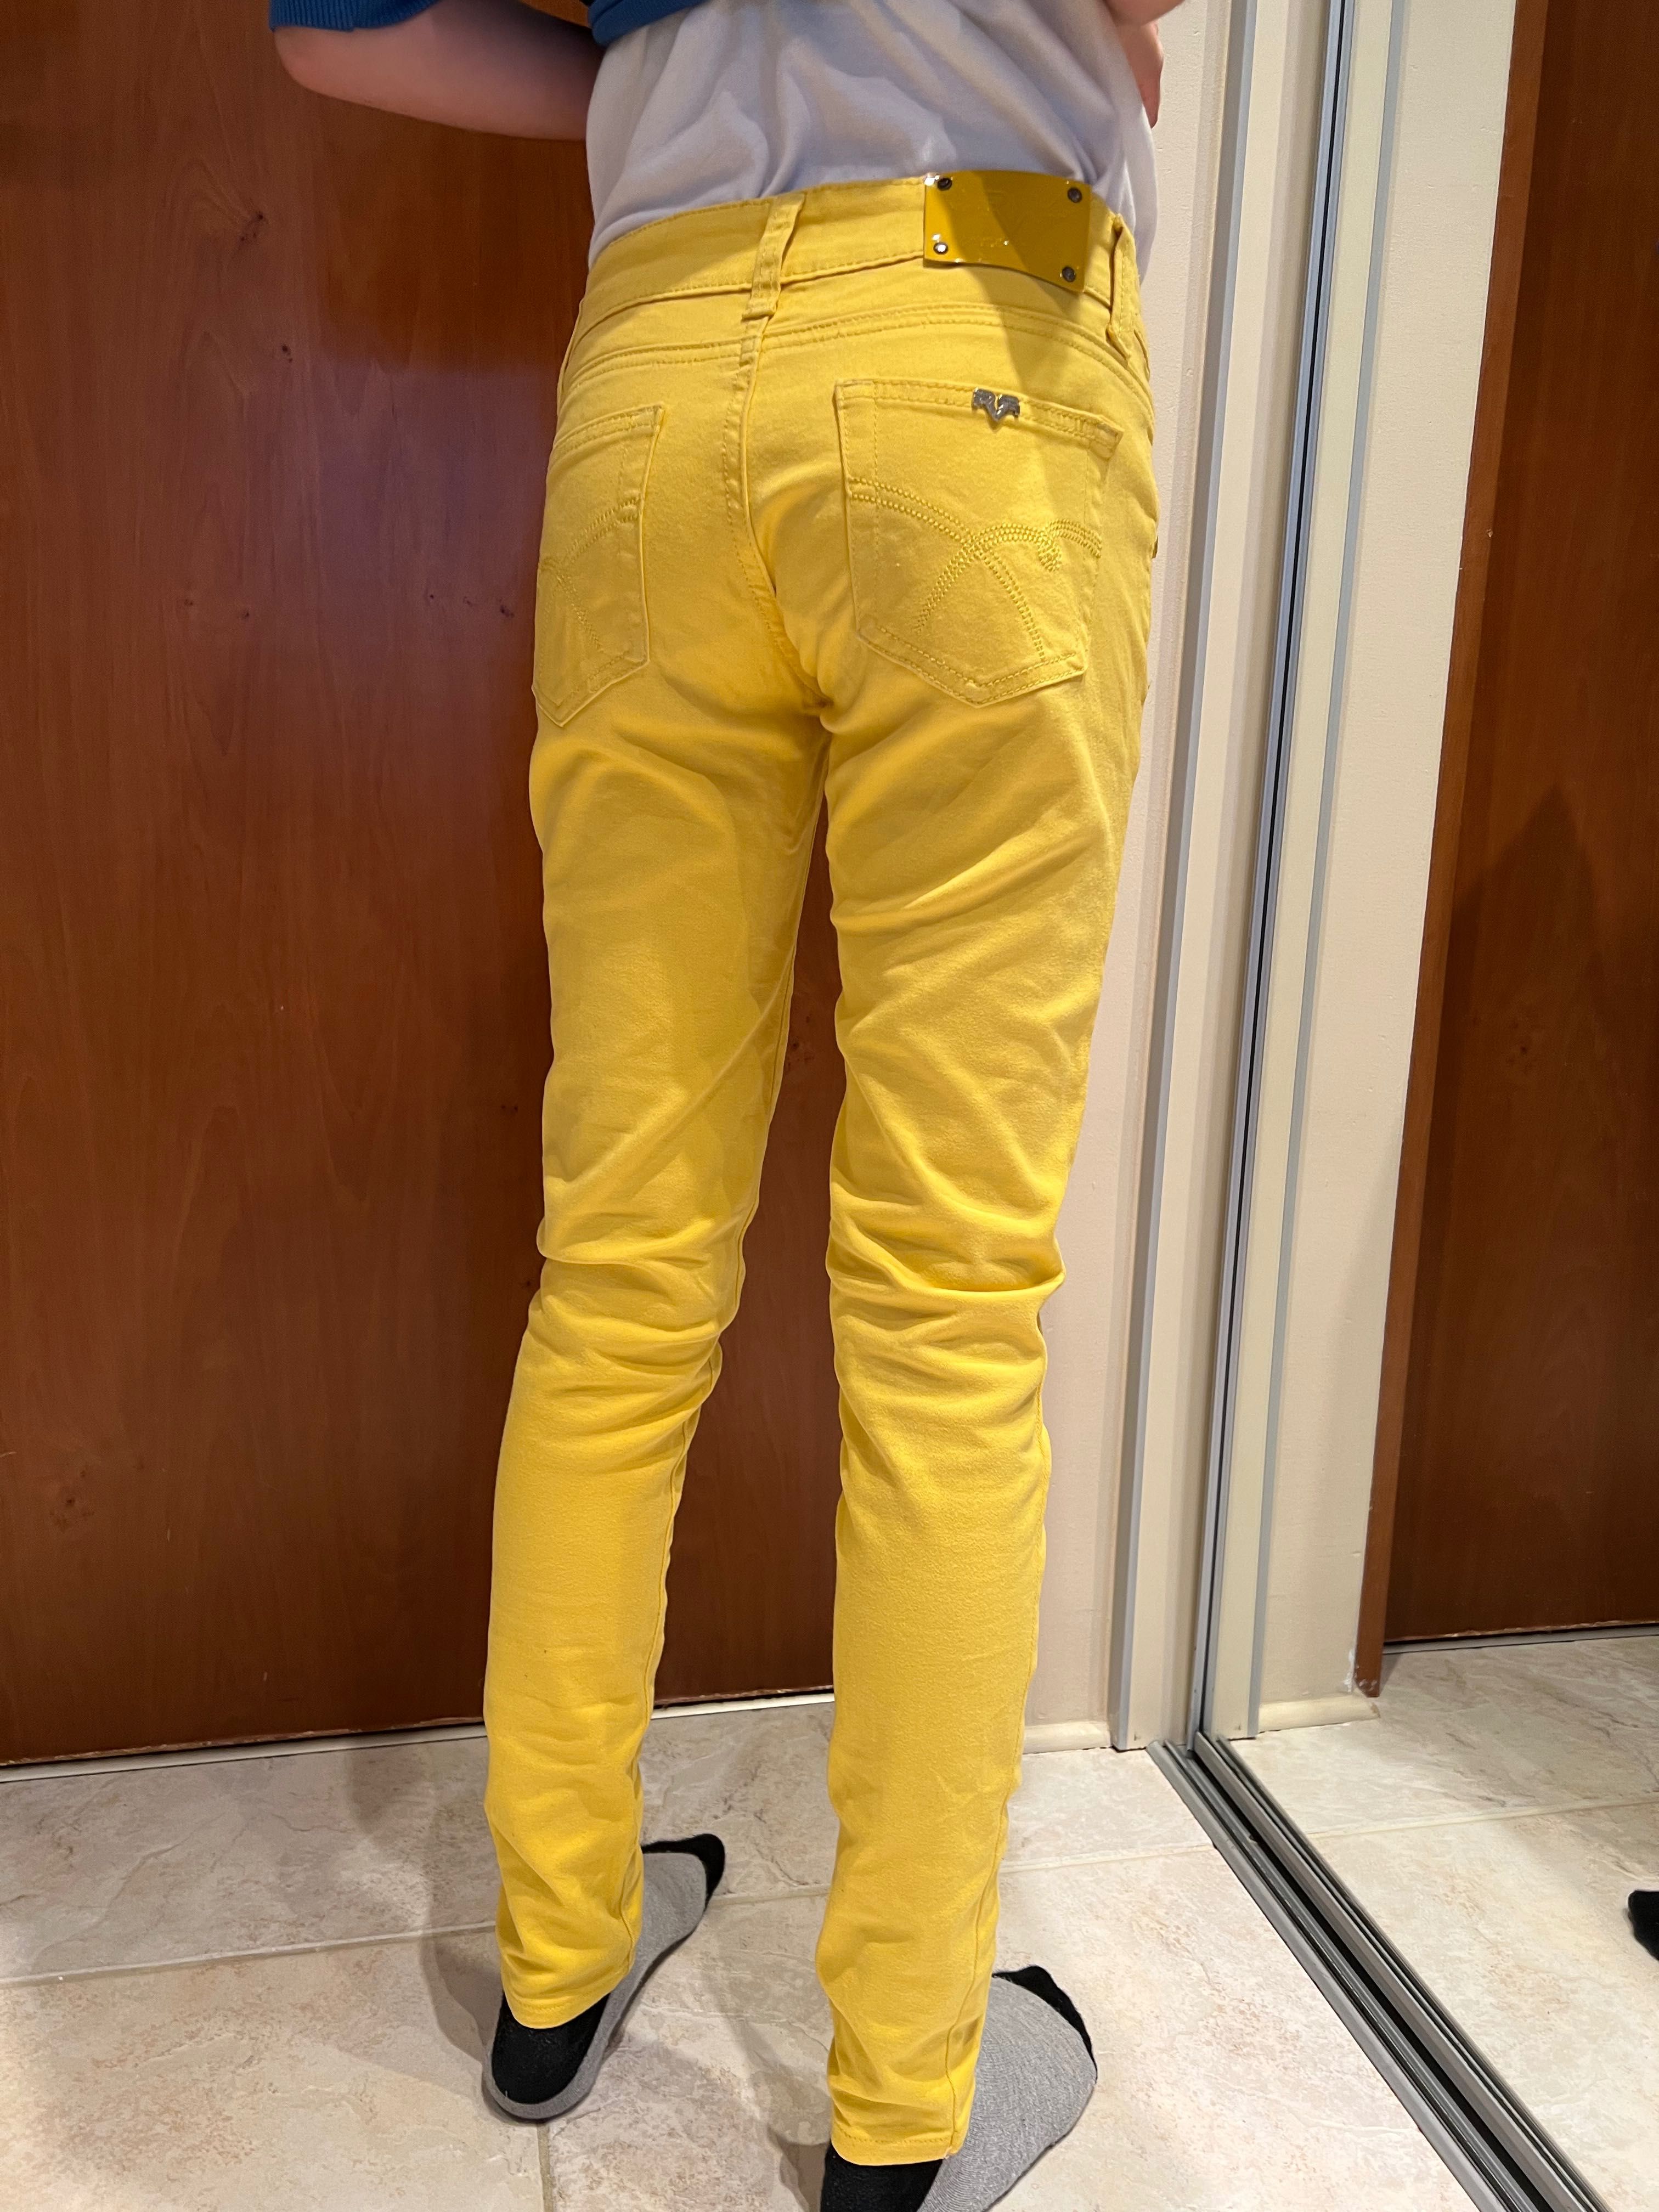 Jeansy żółte. Rozmiar 34, XS firmy Revers